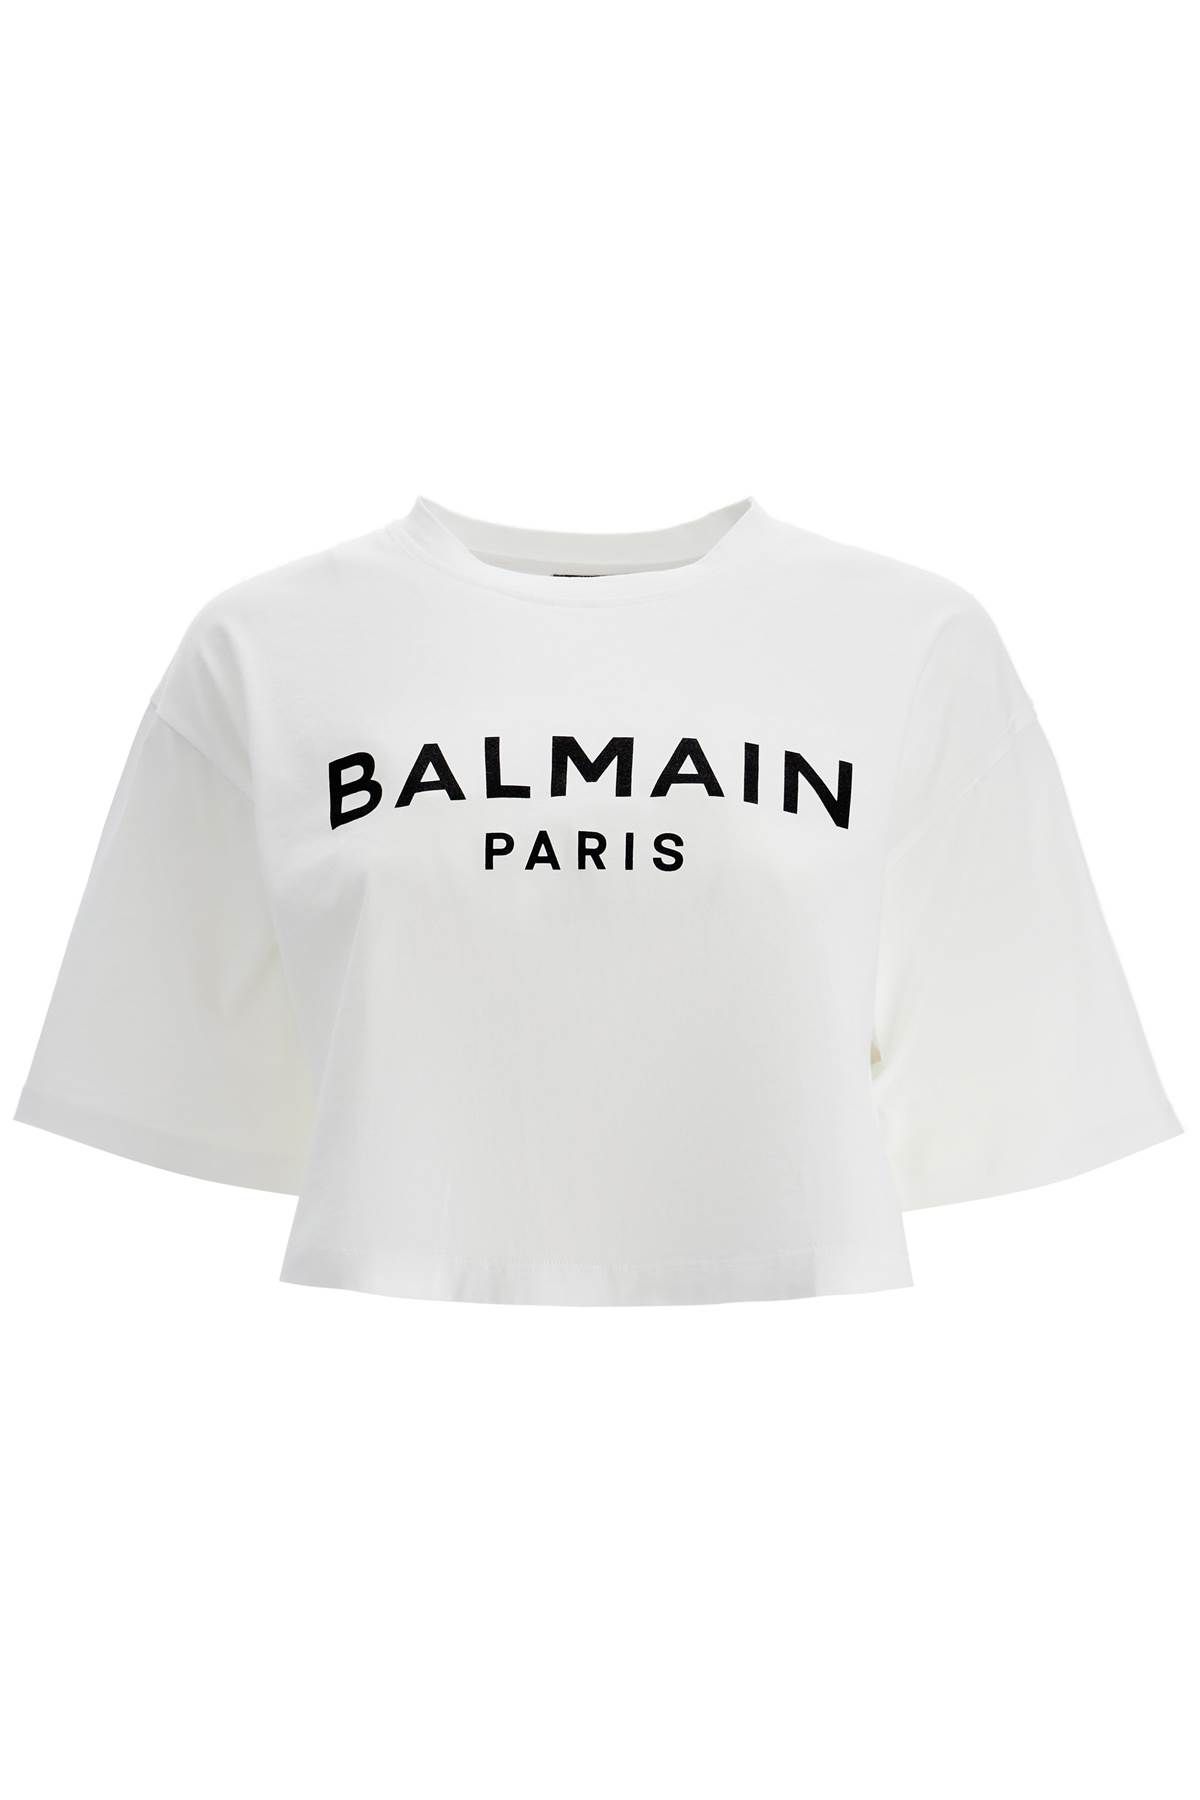 Balmain BALMAIN logo print boxy t-shirt